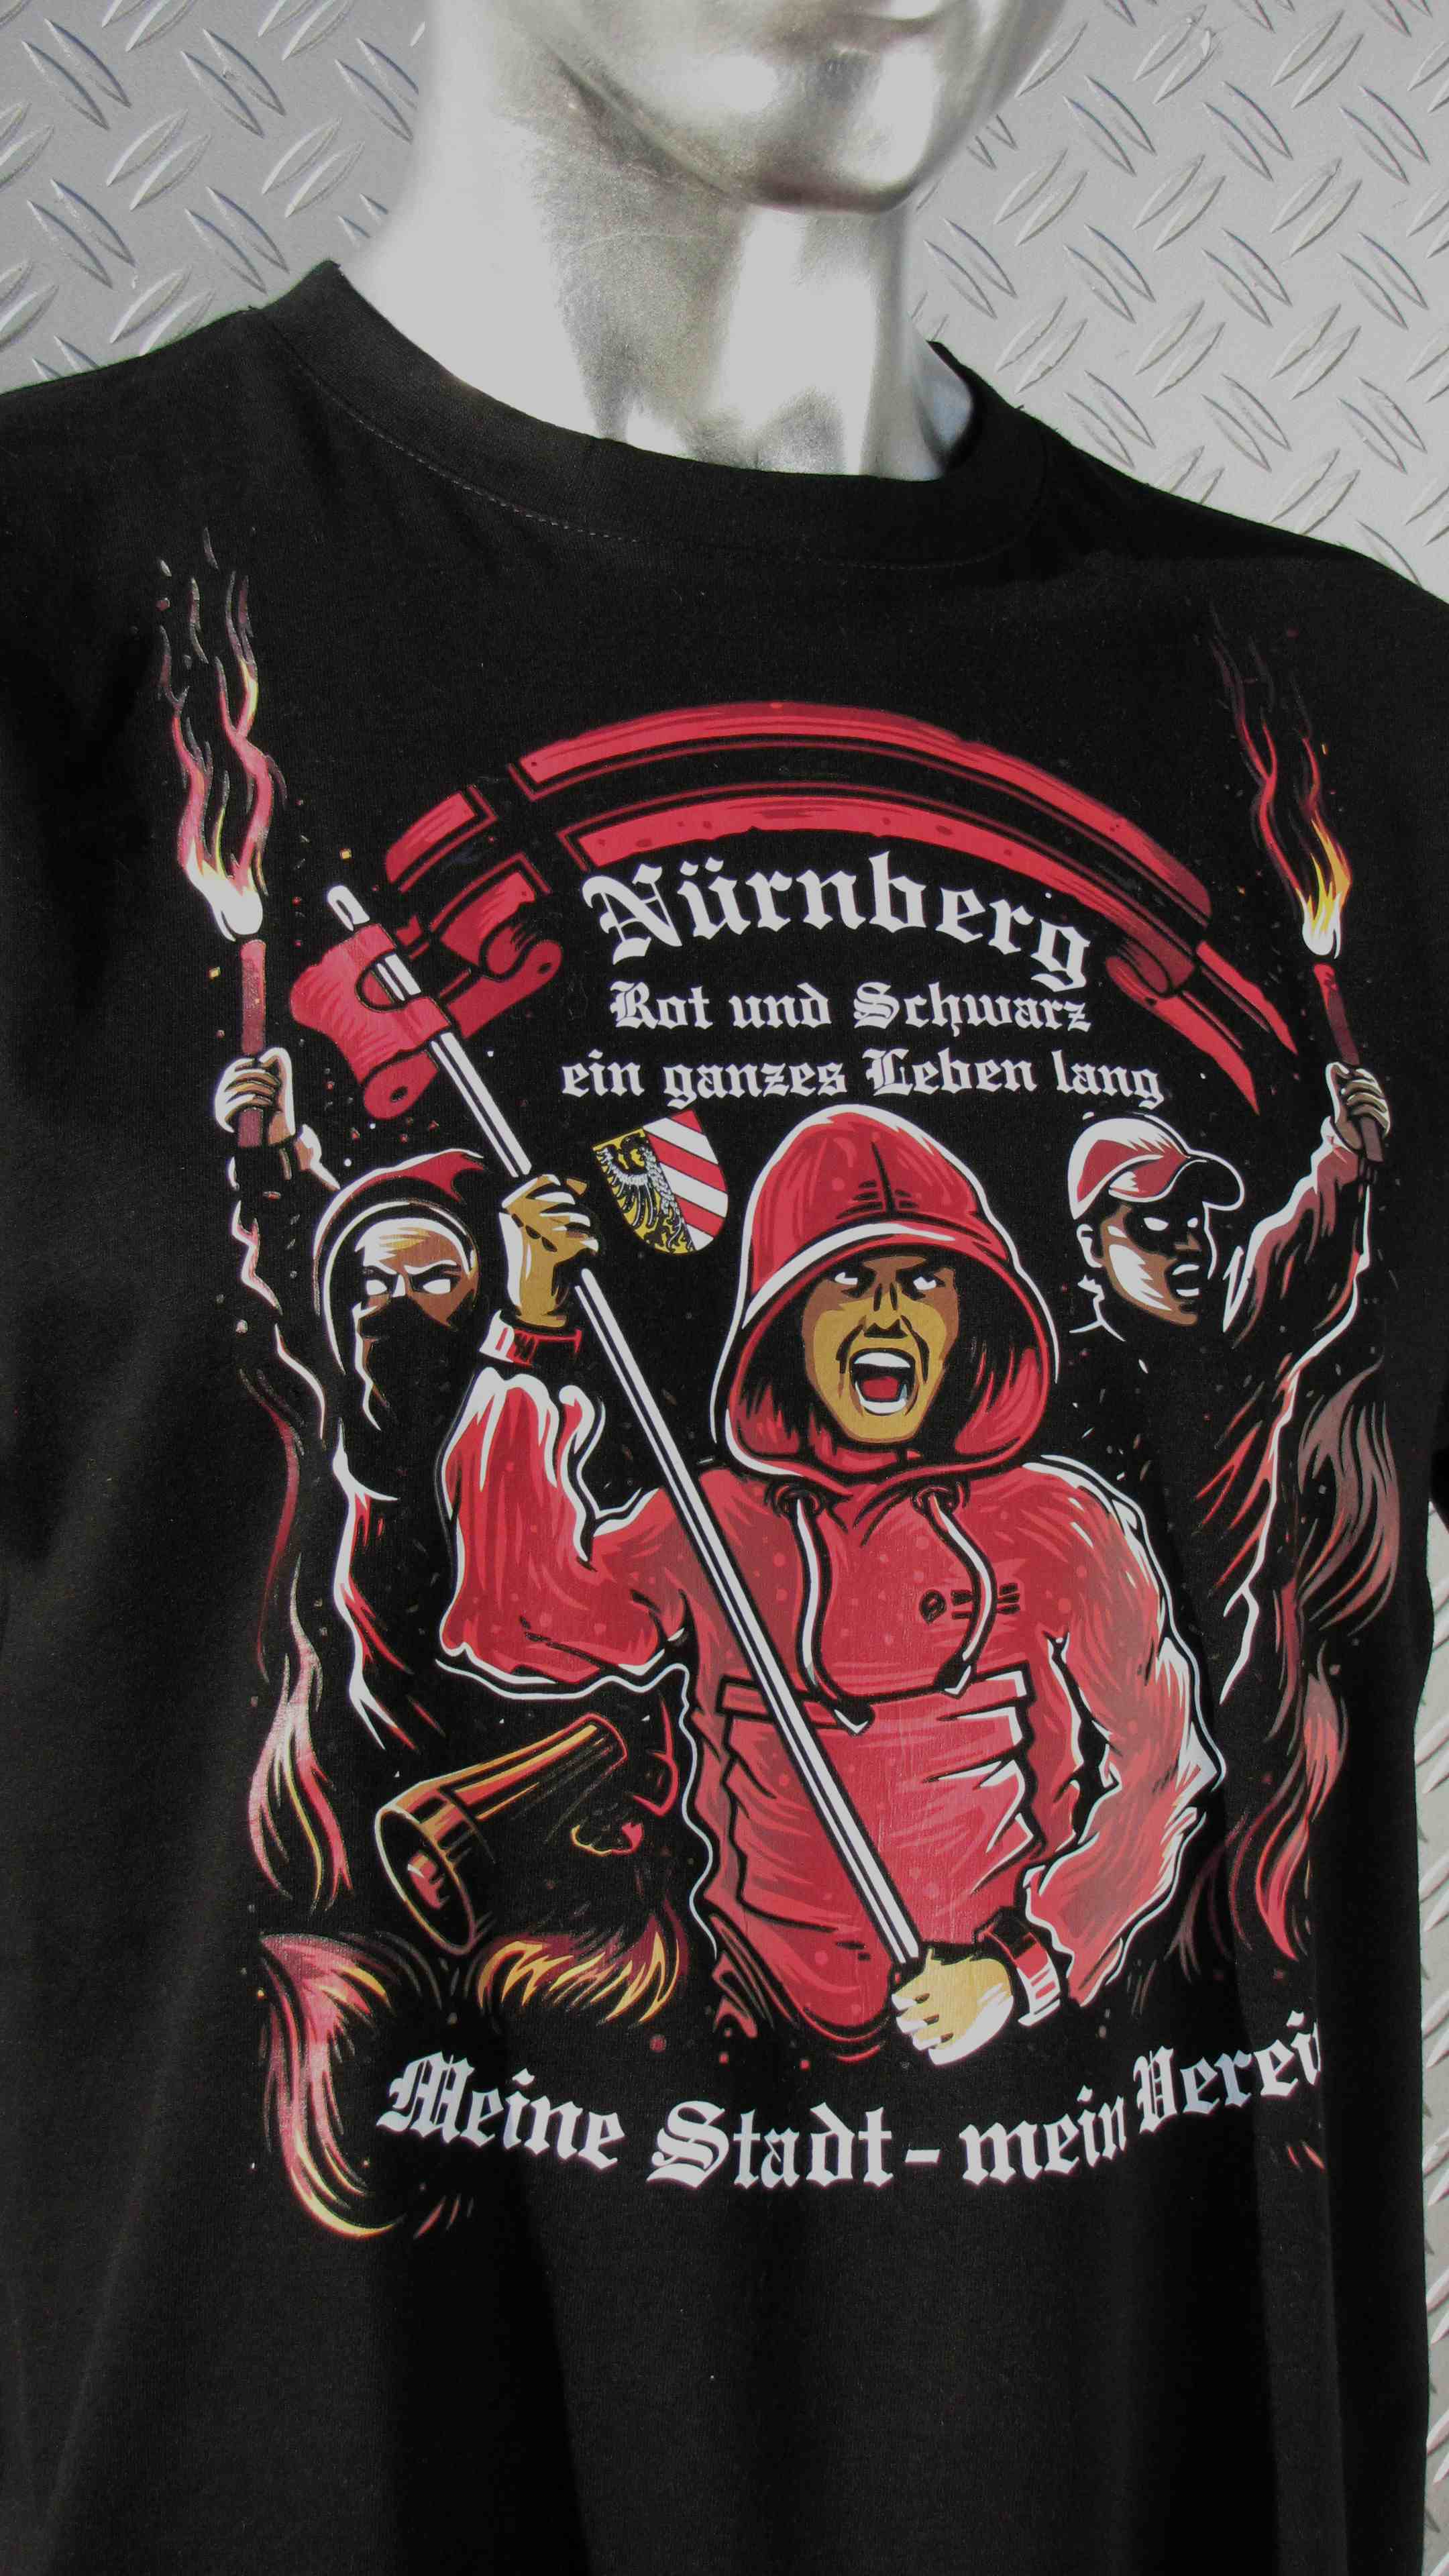 T-Shirt einseitig bedruckt - Meine Stadt mein Verein (fullcolor)